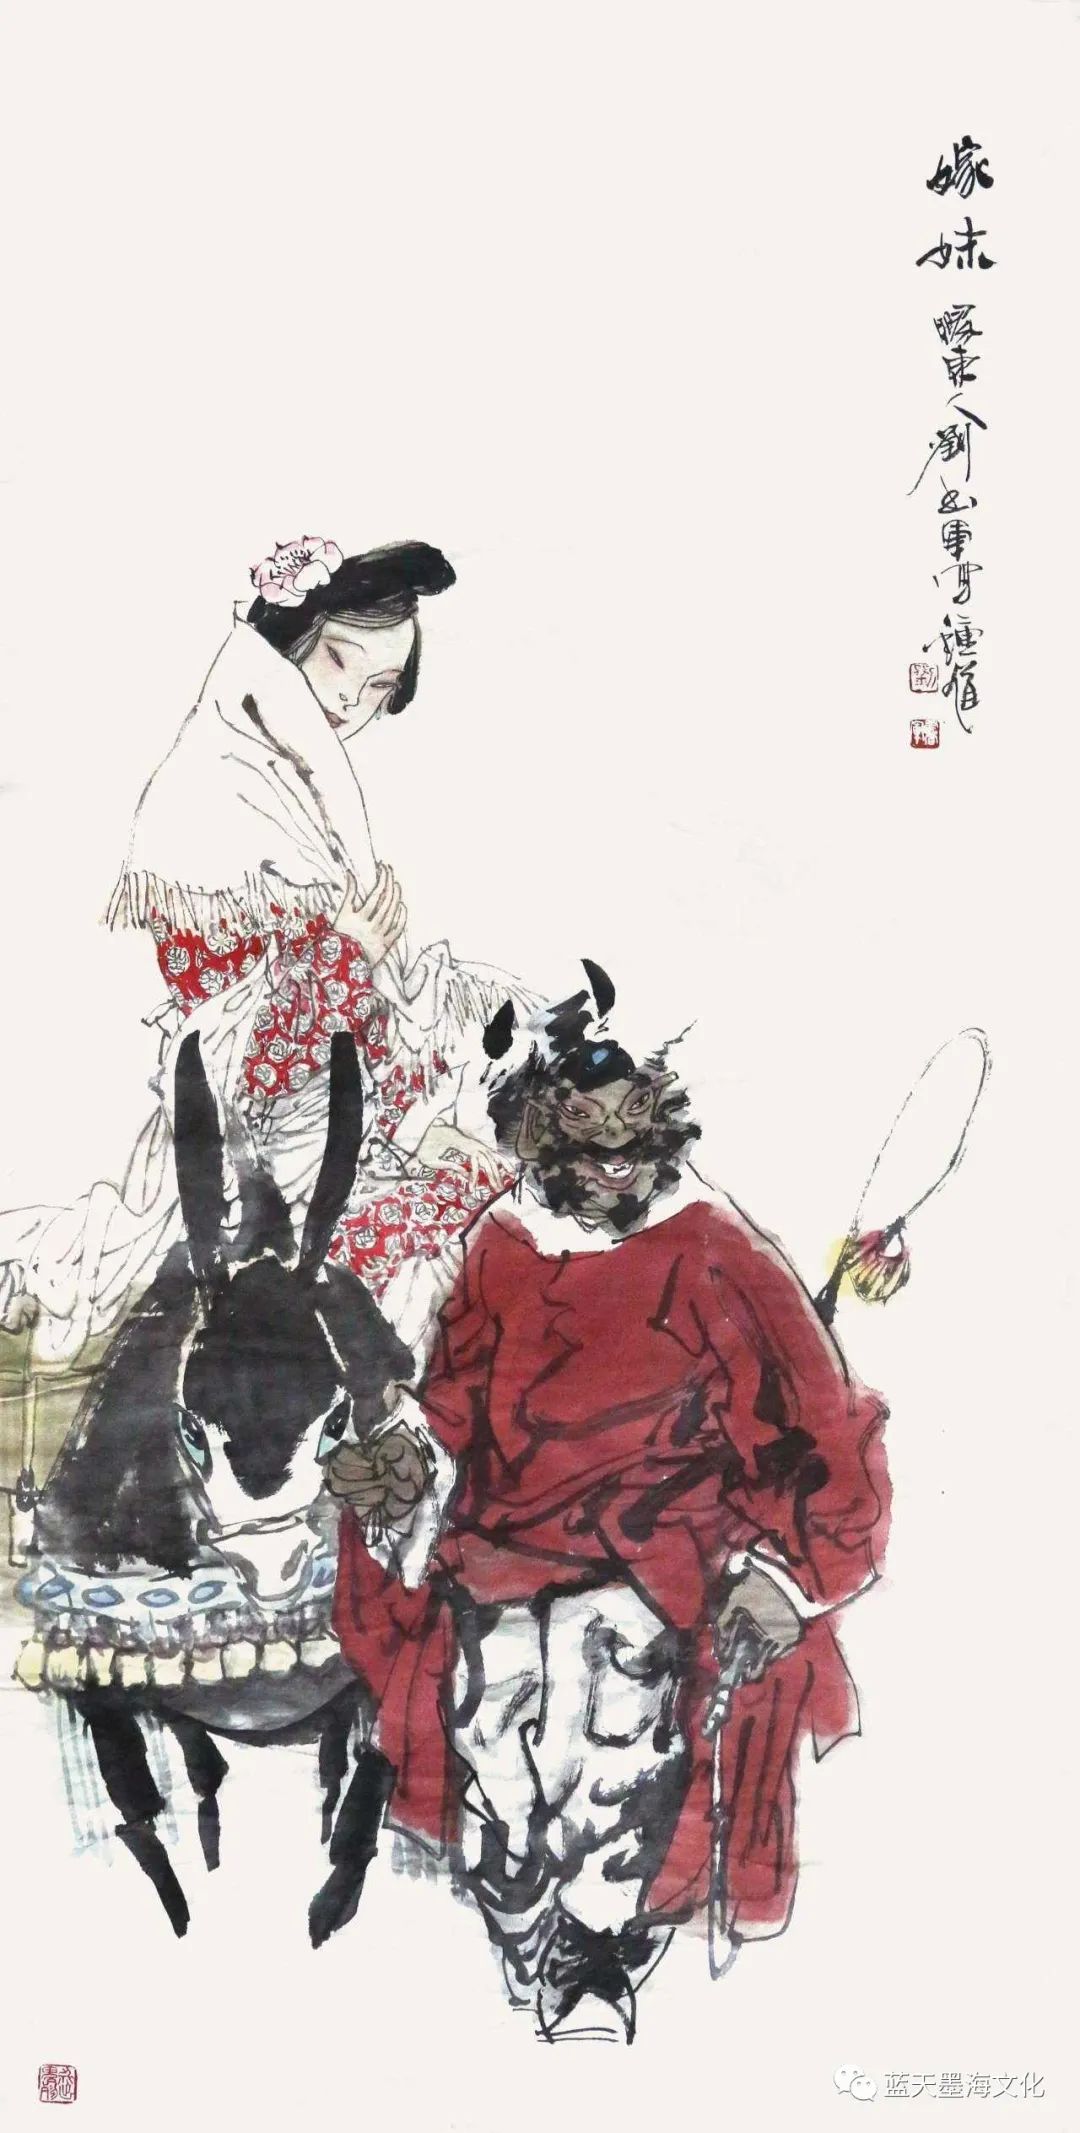 笔随时代 趣自生活——读著名画家刘书军的钟馗系列作品